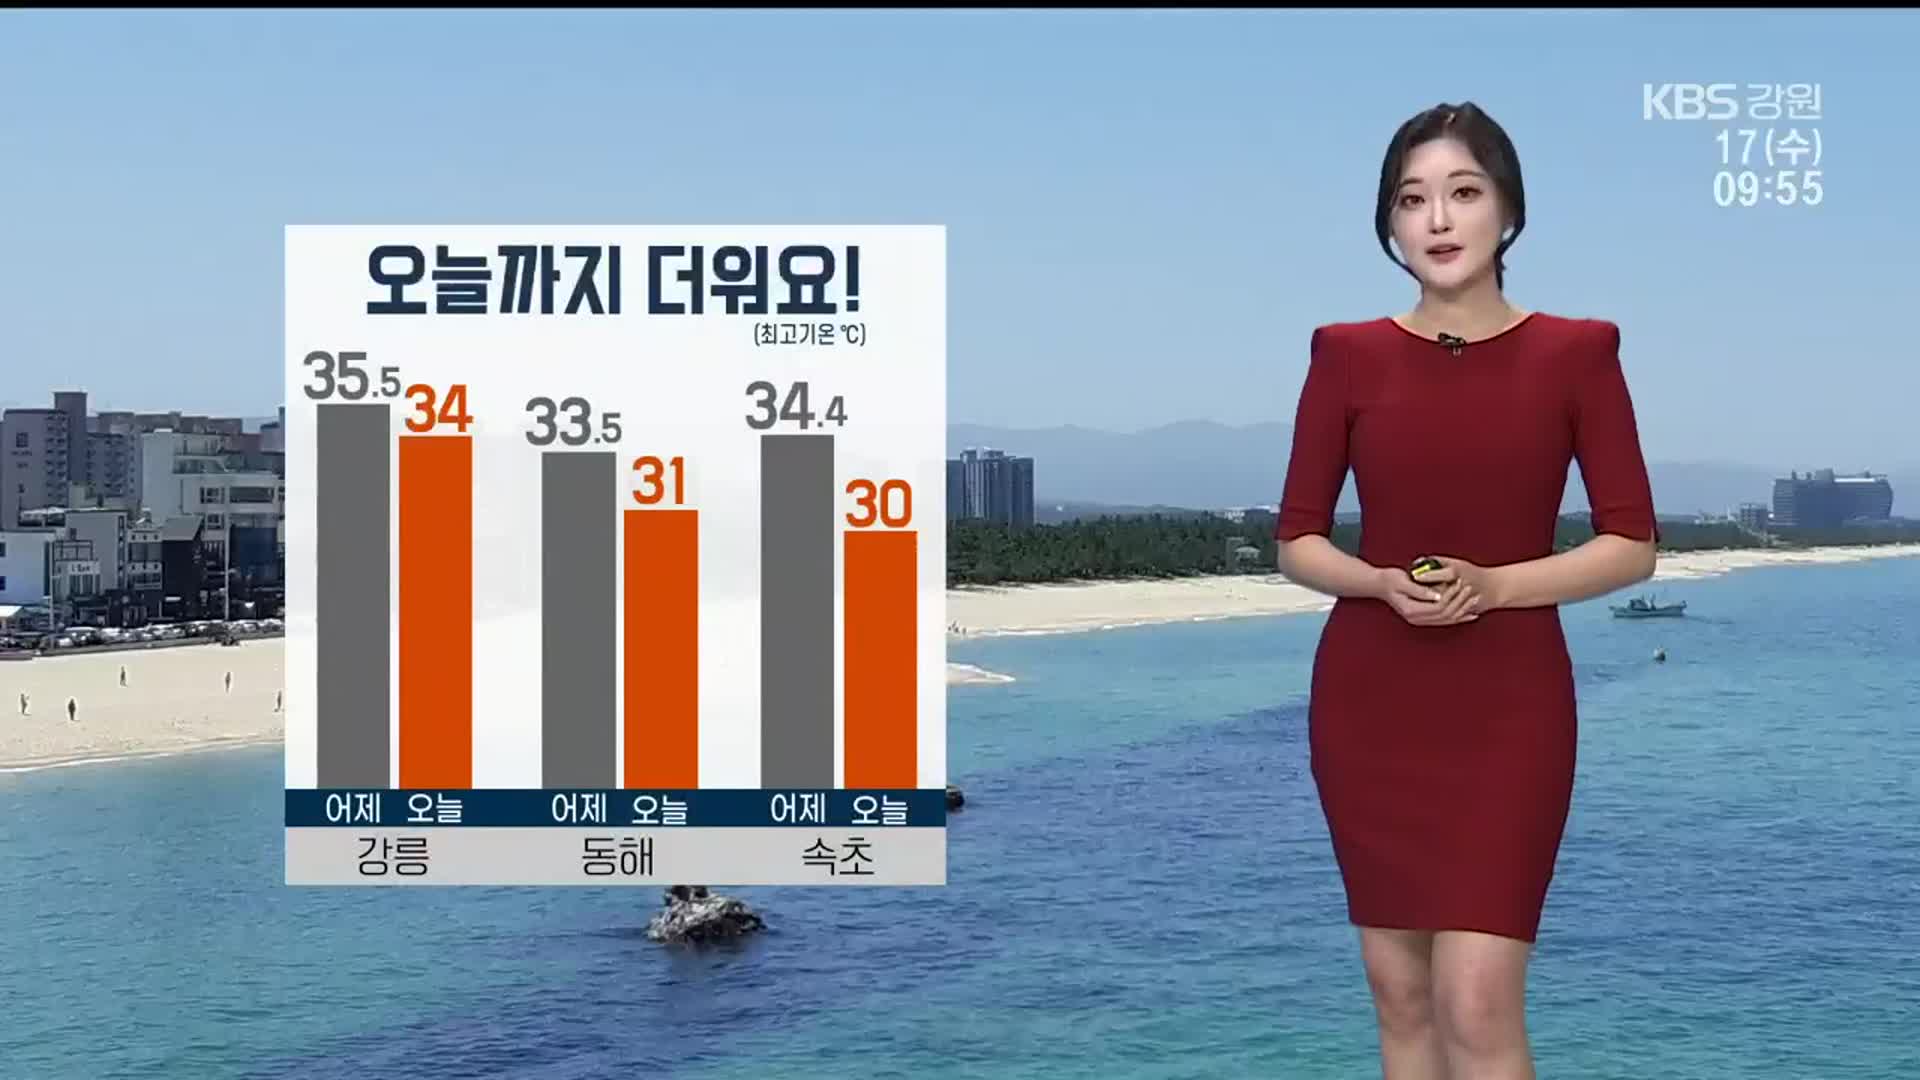 [날씨] 강릉 ‘최고 34도’ 더위 극심…오전까지 강풍 주의